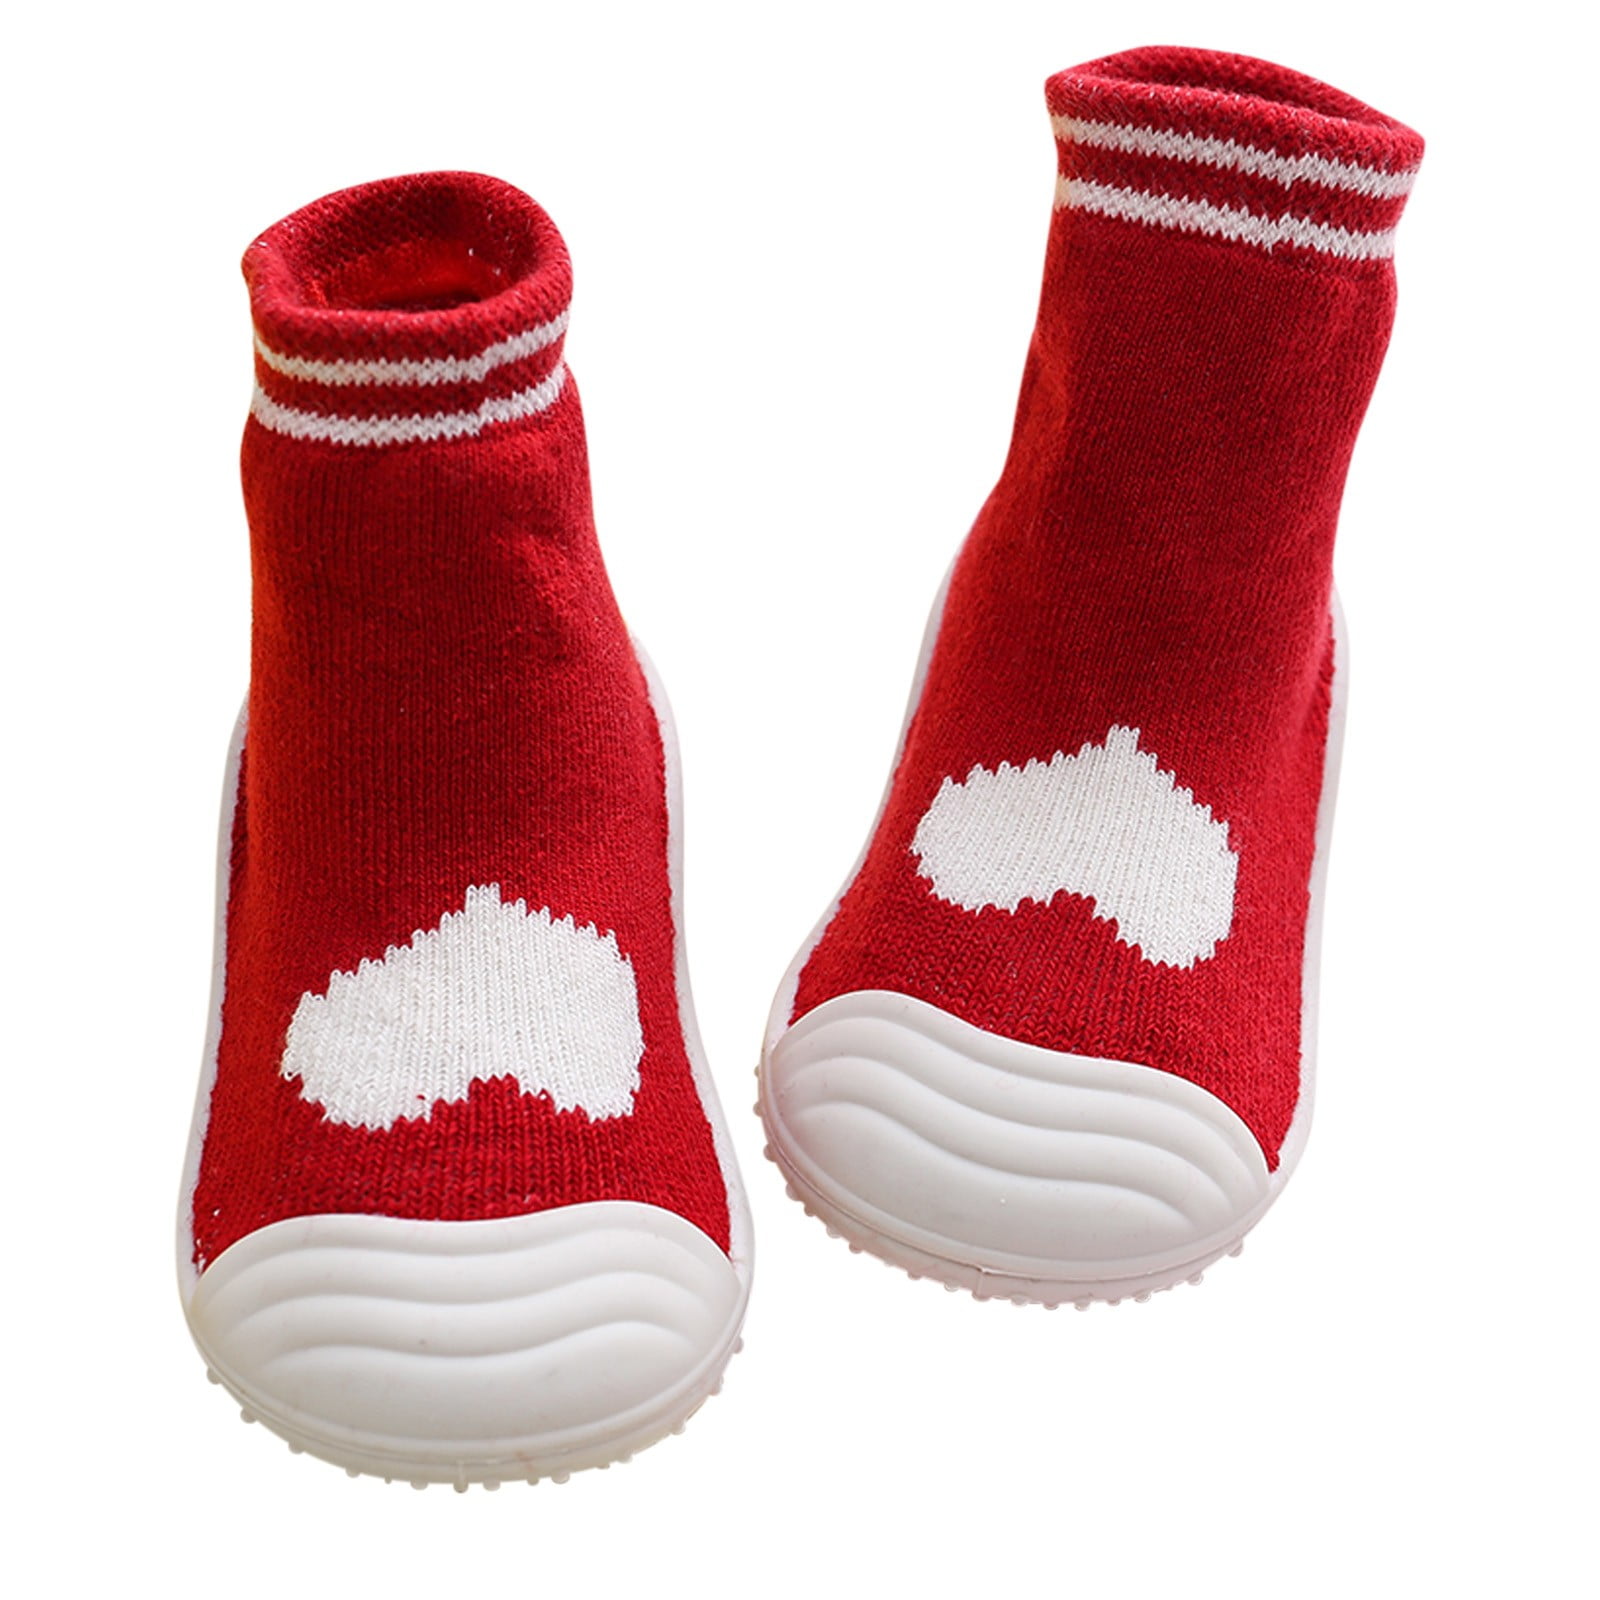 Baby Boys Sock Shoes Breathable Unisex Walking Shoe Anti-Slip Soft ...